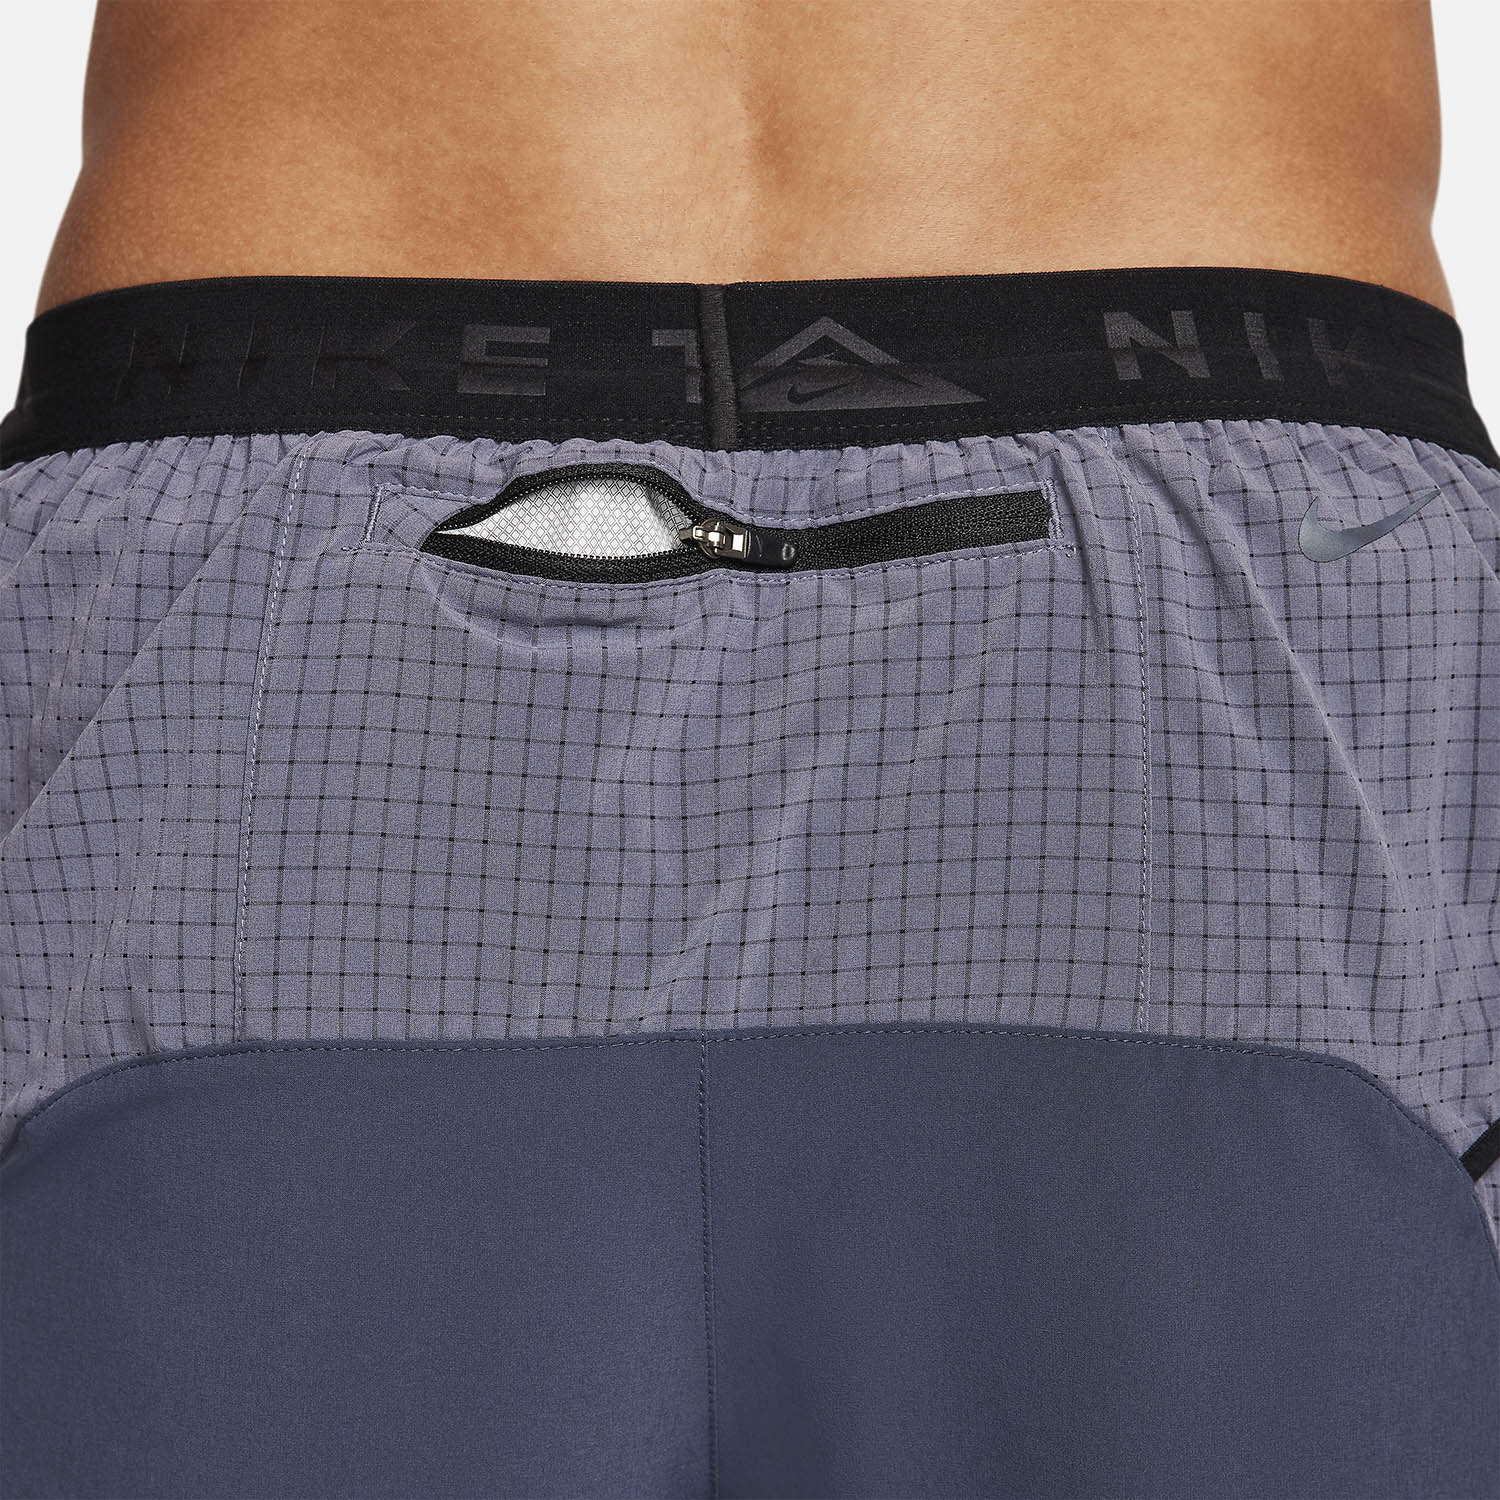 Nike Dri-FIT Second Sunrise 5in Shorts - Thunder Blue/Light Carbon/Black